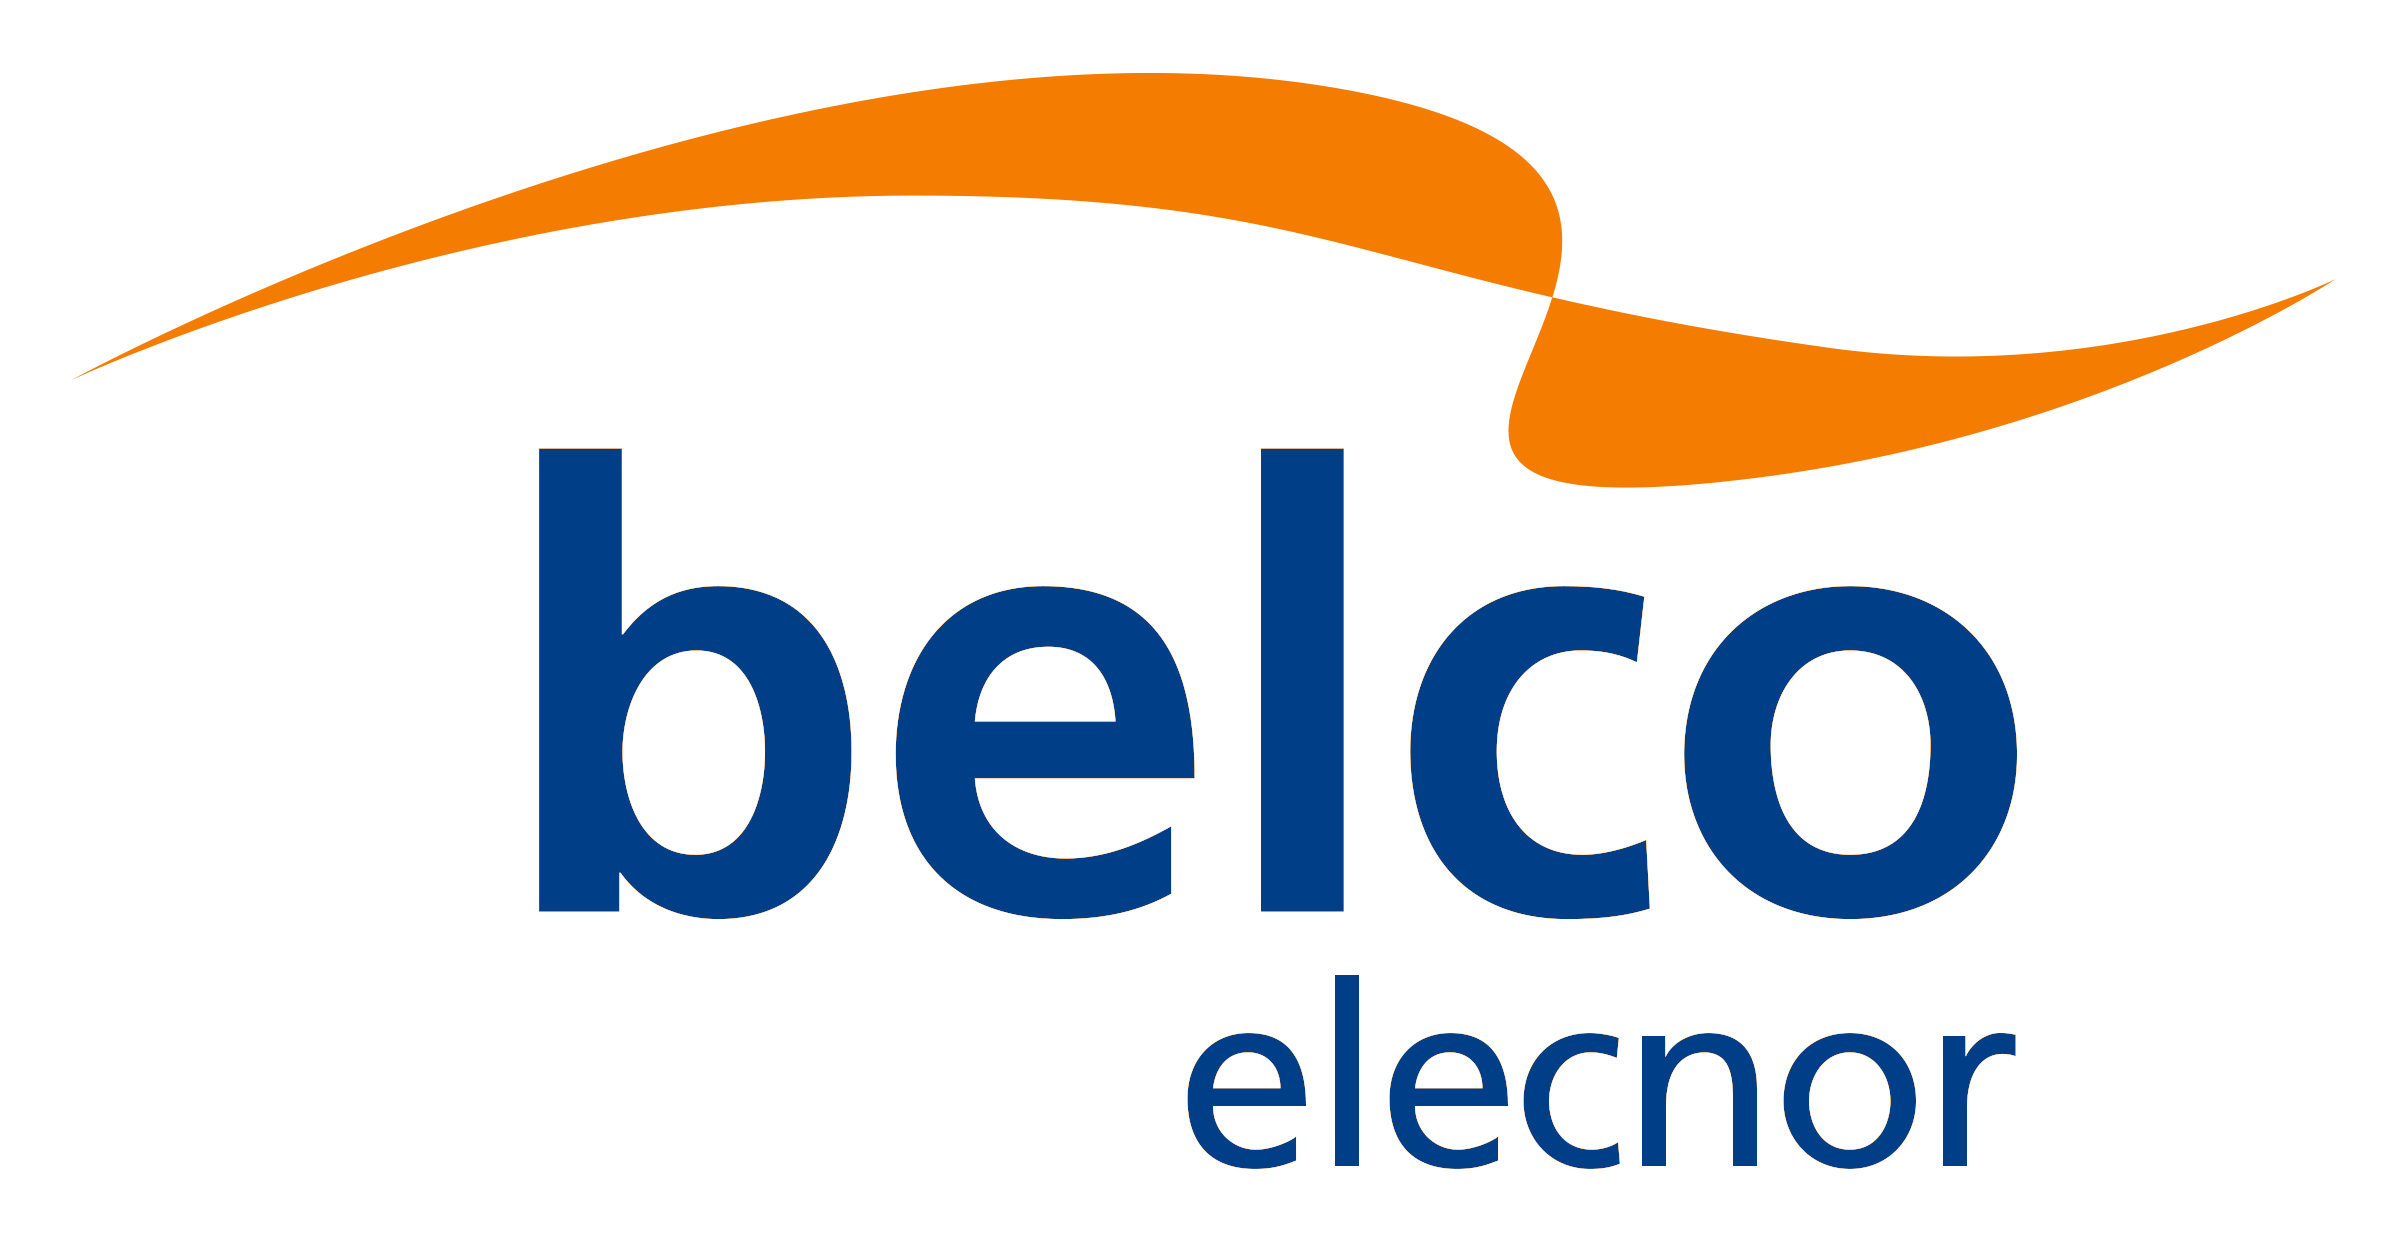 (c) Elecnorbelco.com